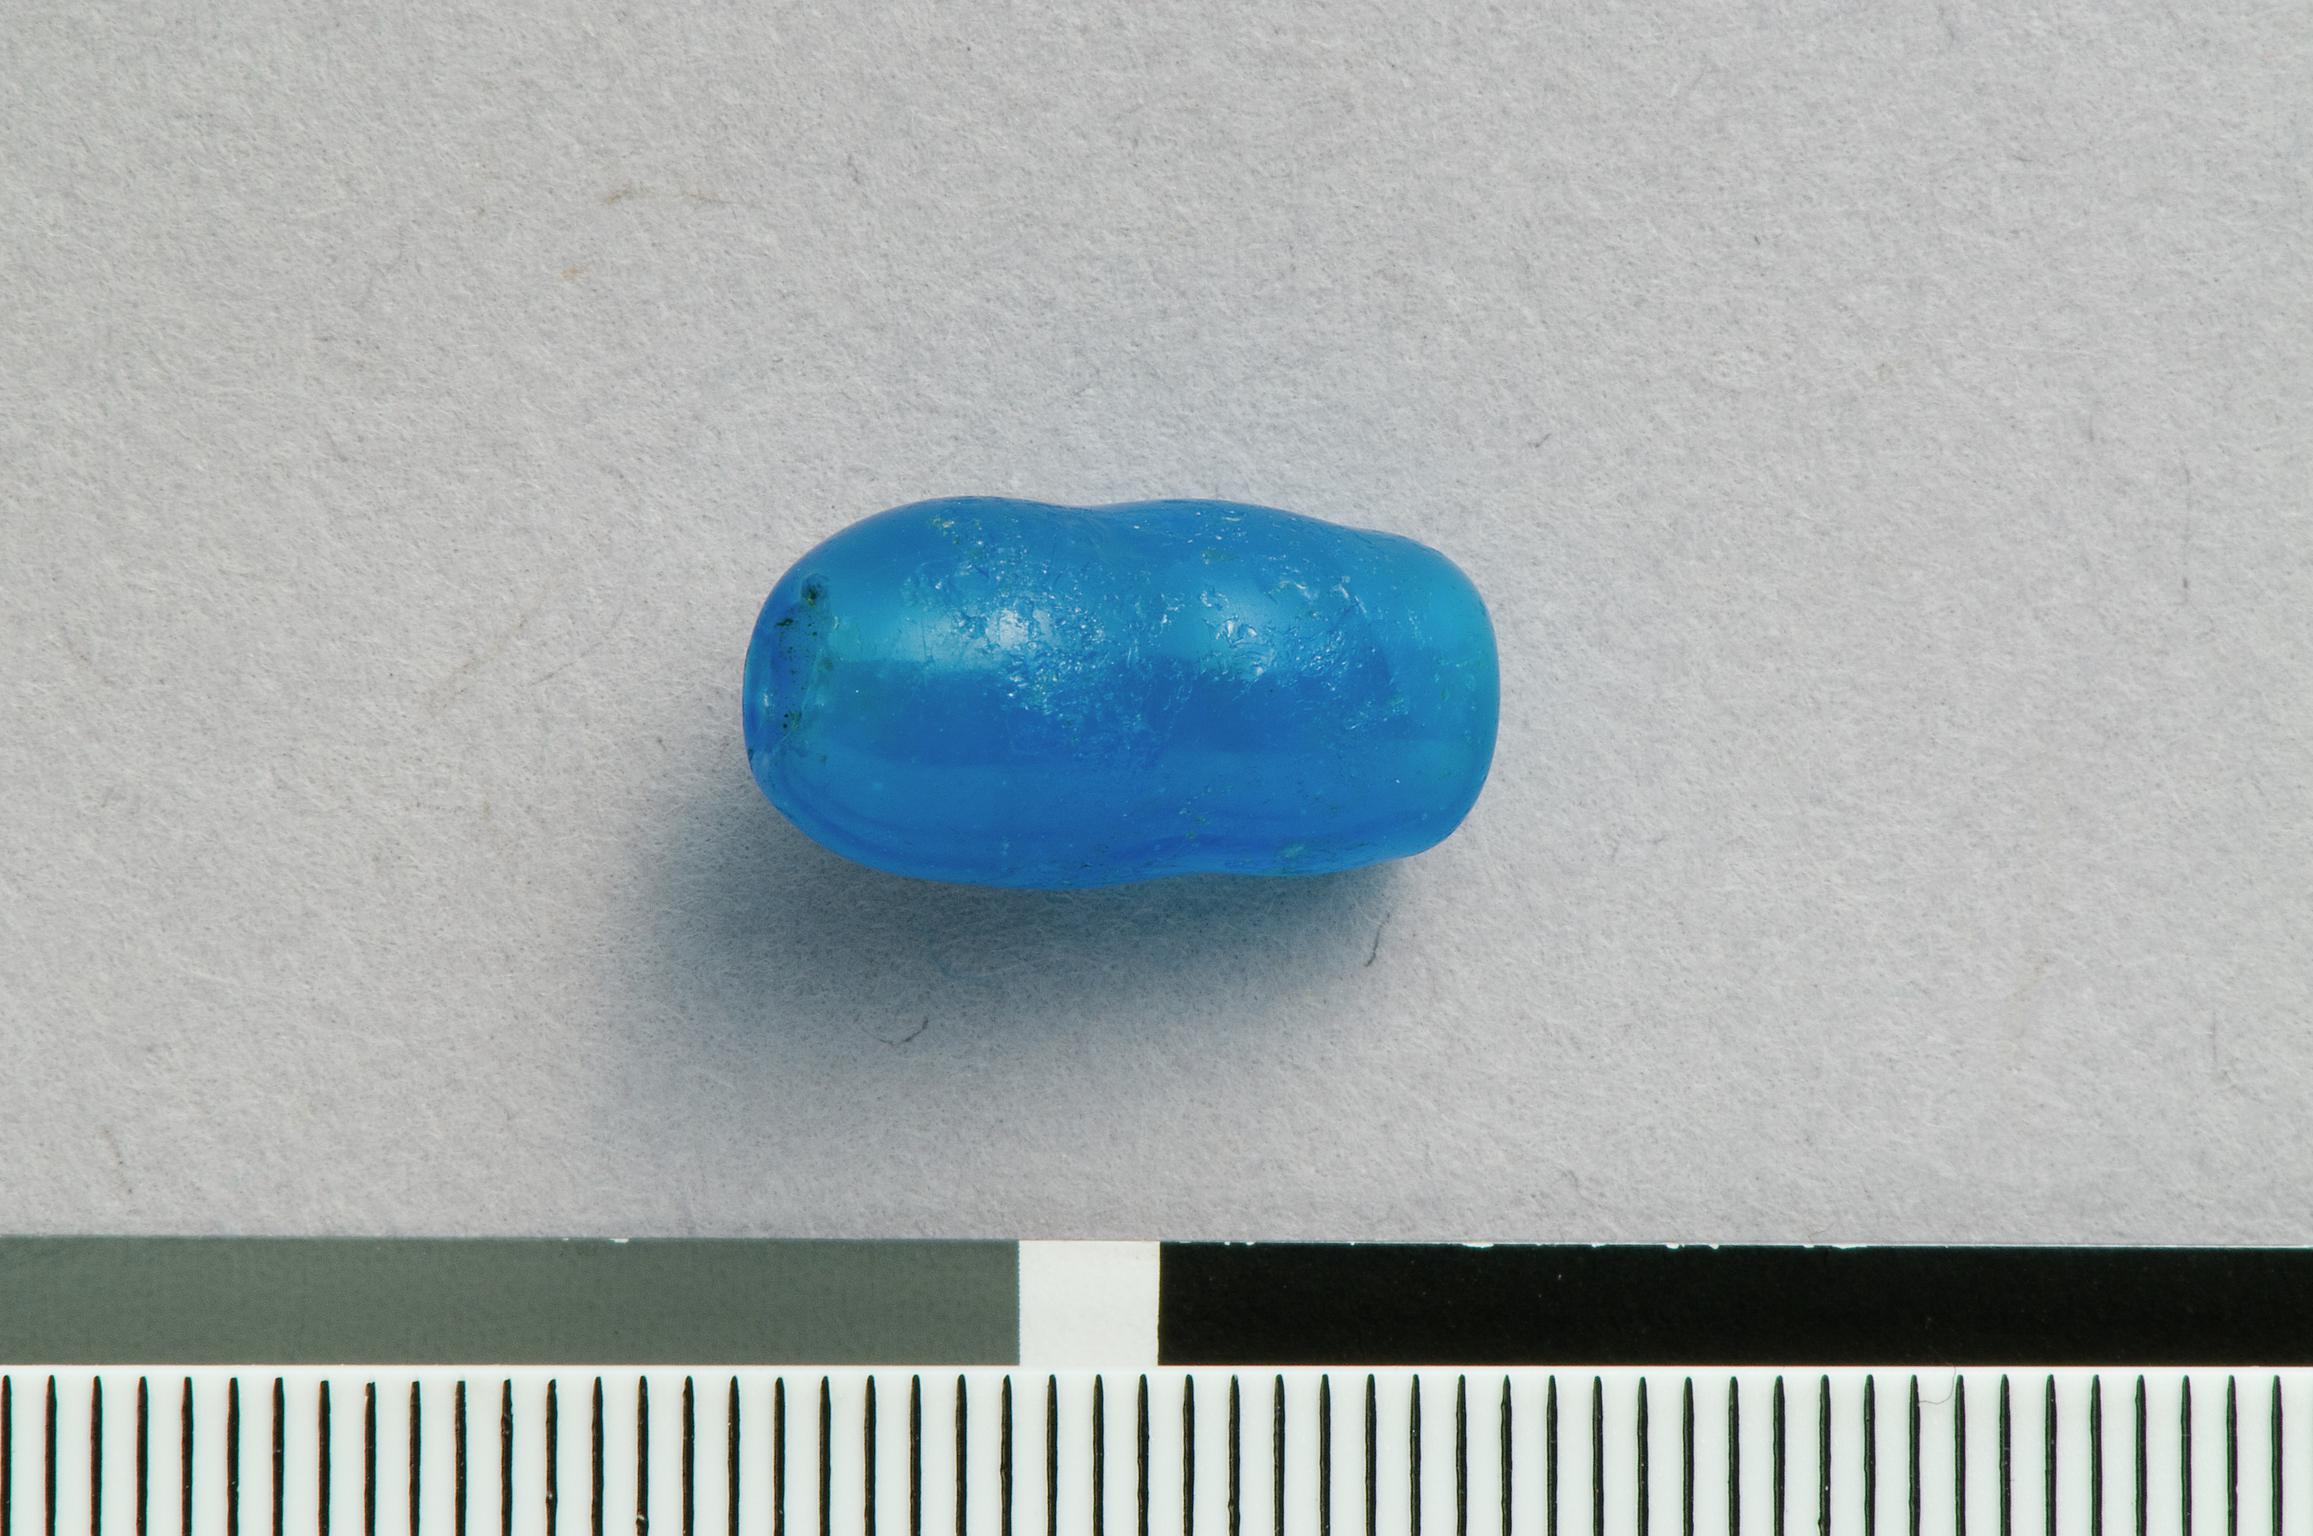 Roman glass bead